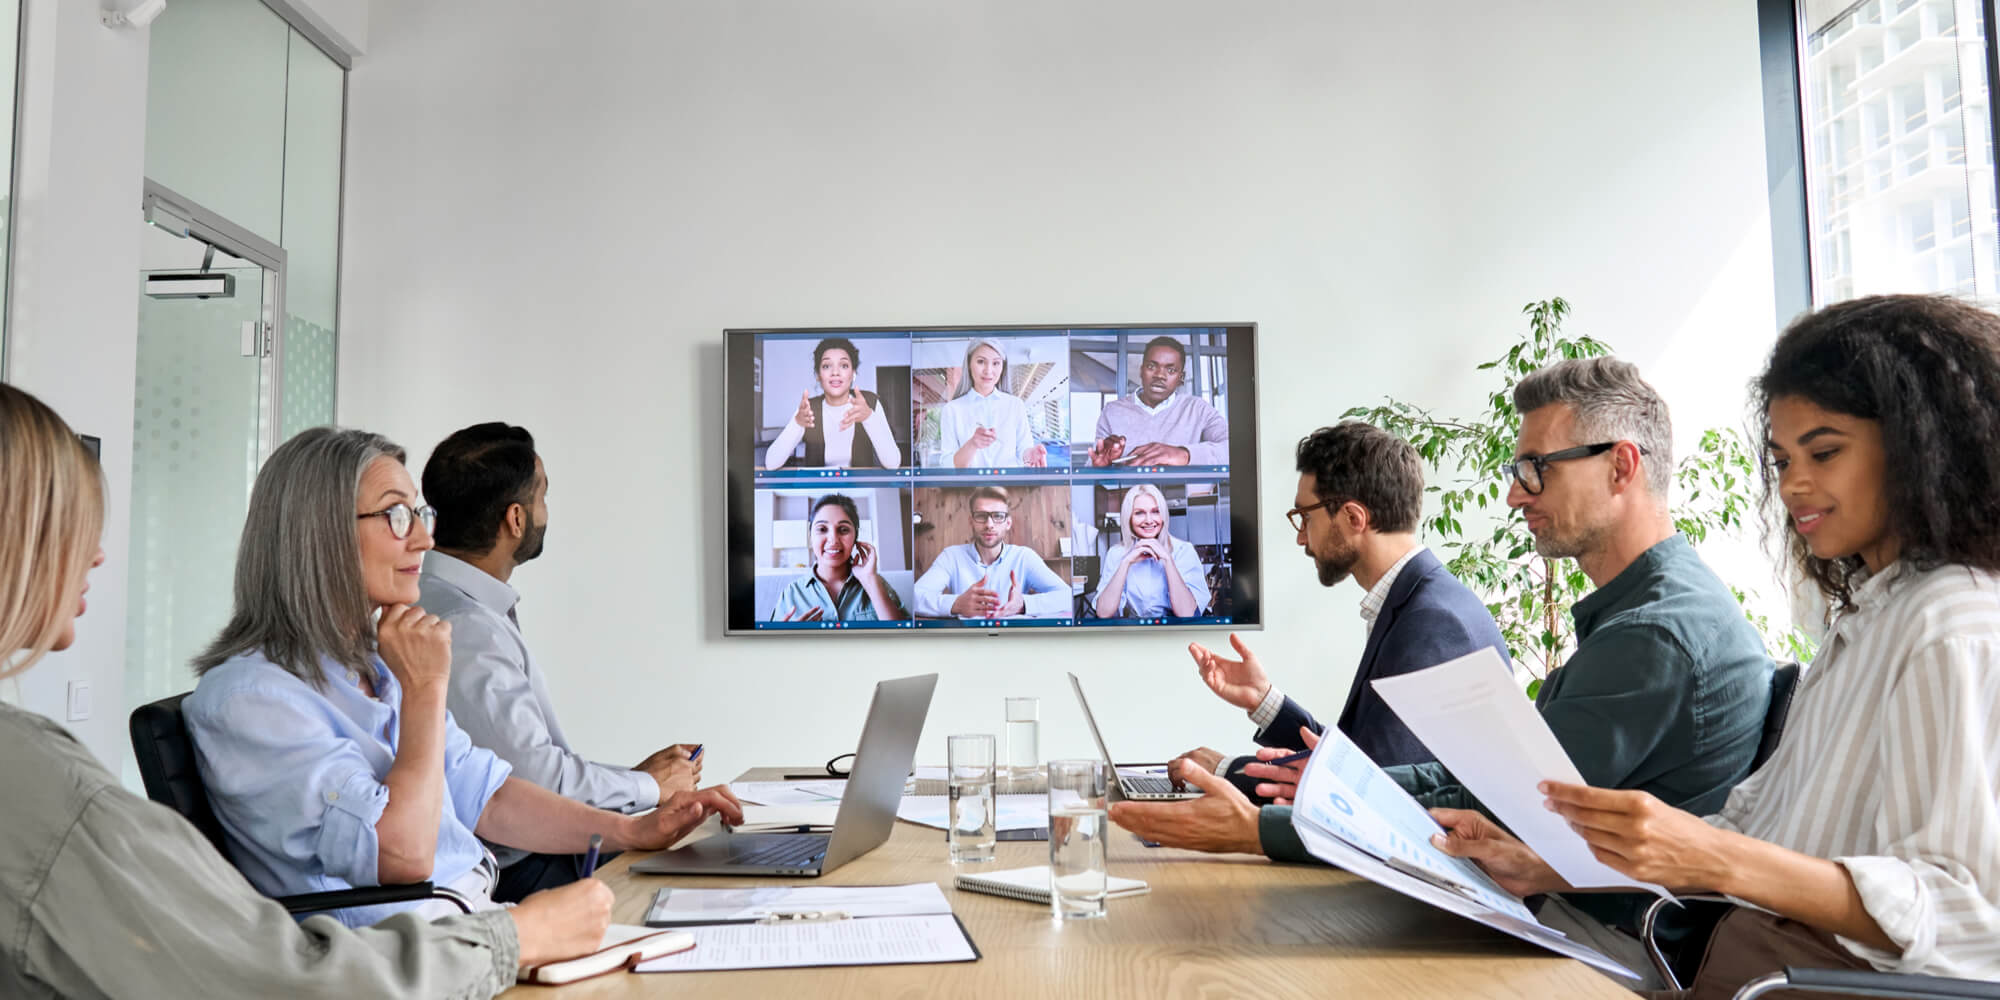 Bring meeting spaces online